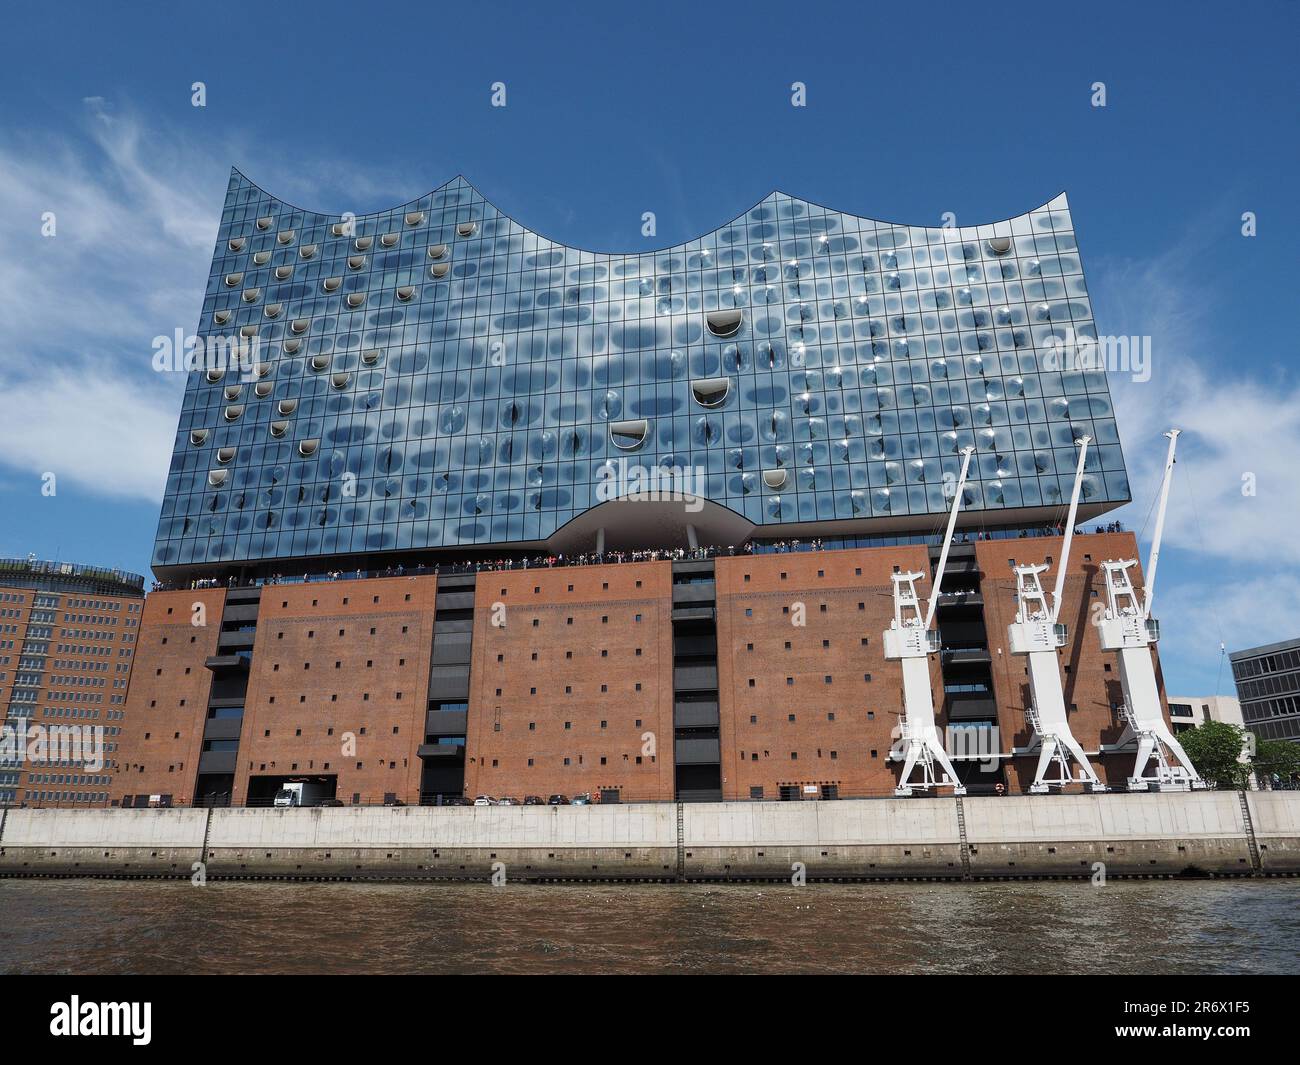 Elbphilharmonie-Konzerthalle in Hamburg, von der Elbe aus gesehen. Es wurde von den Architekten Herzog und de Meuron entworfen und 2017 eröffnet. Stockfoto